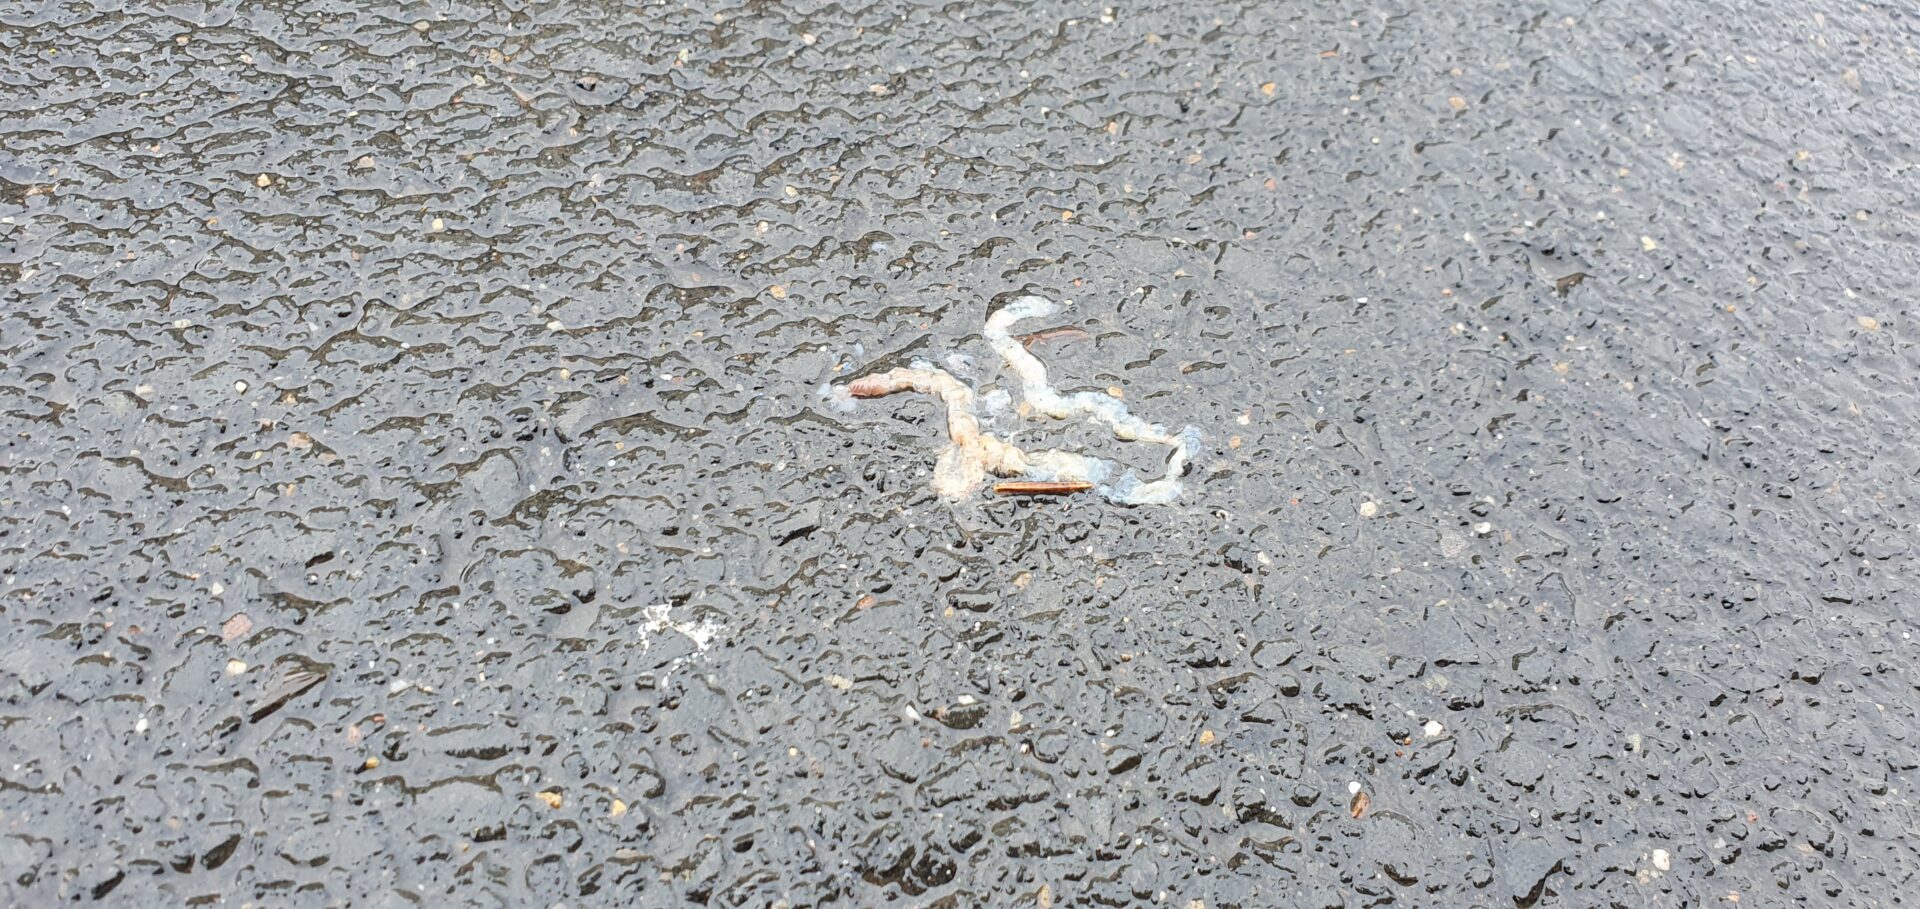 Toter Regenwurm auf Teerstrasse durch Auto